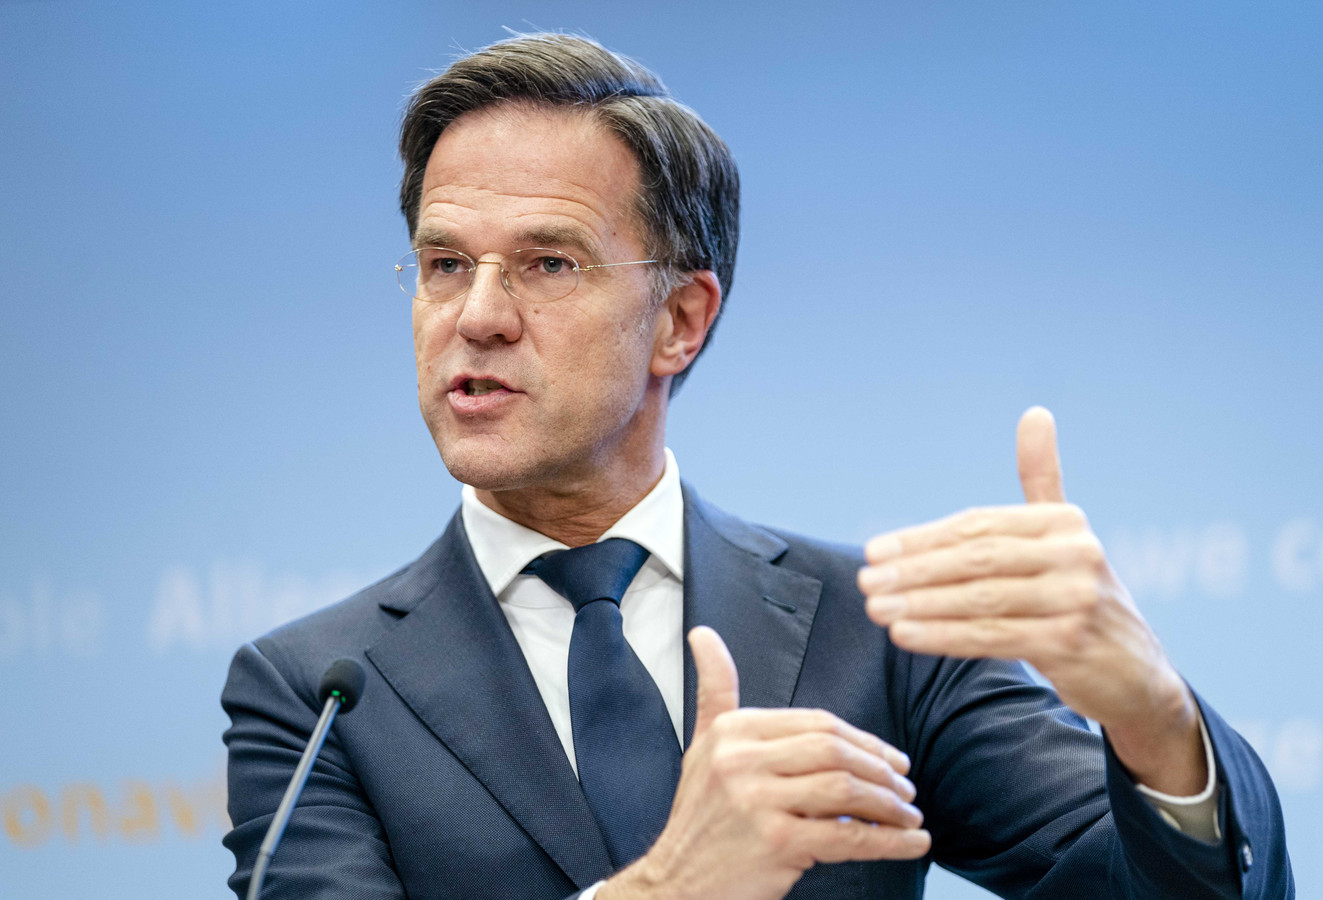 Demissionair premier Mark Rutte tijdens een persconferentie over strengere coronamaatregelen.